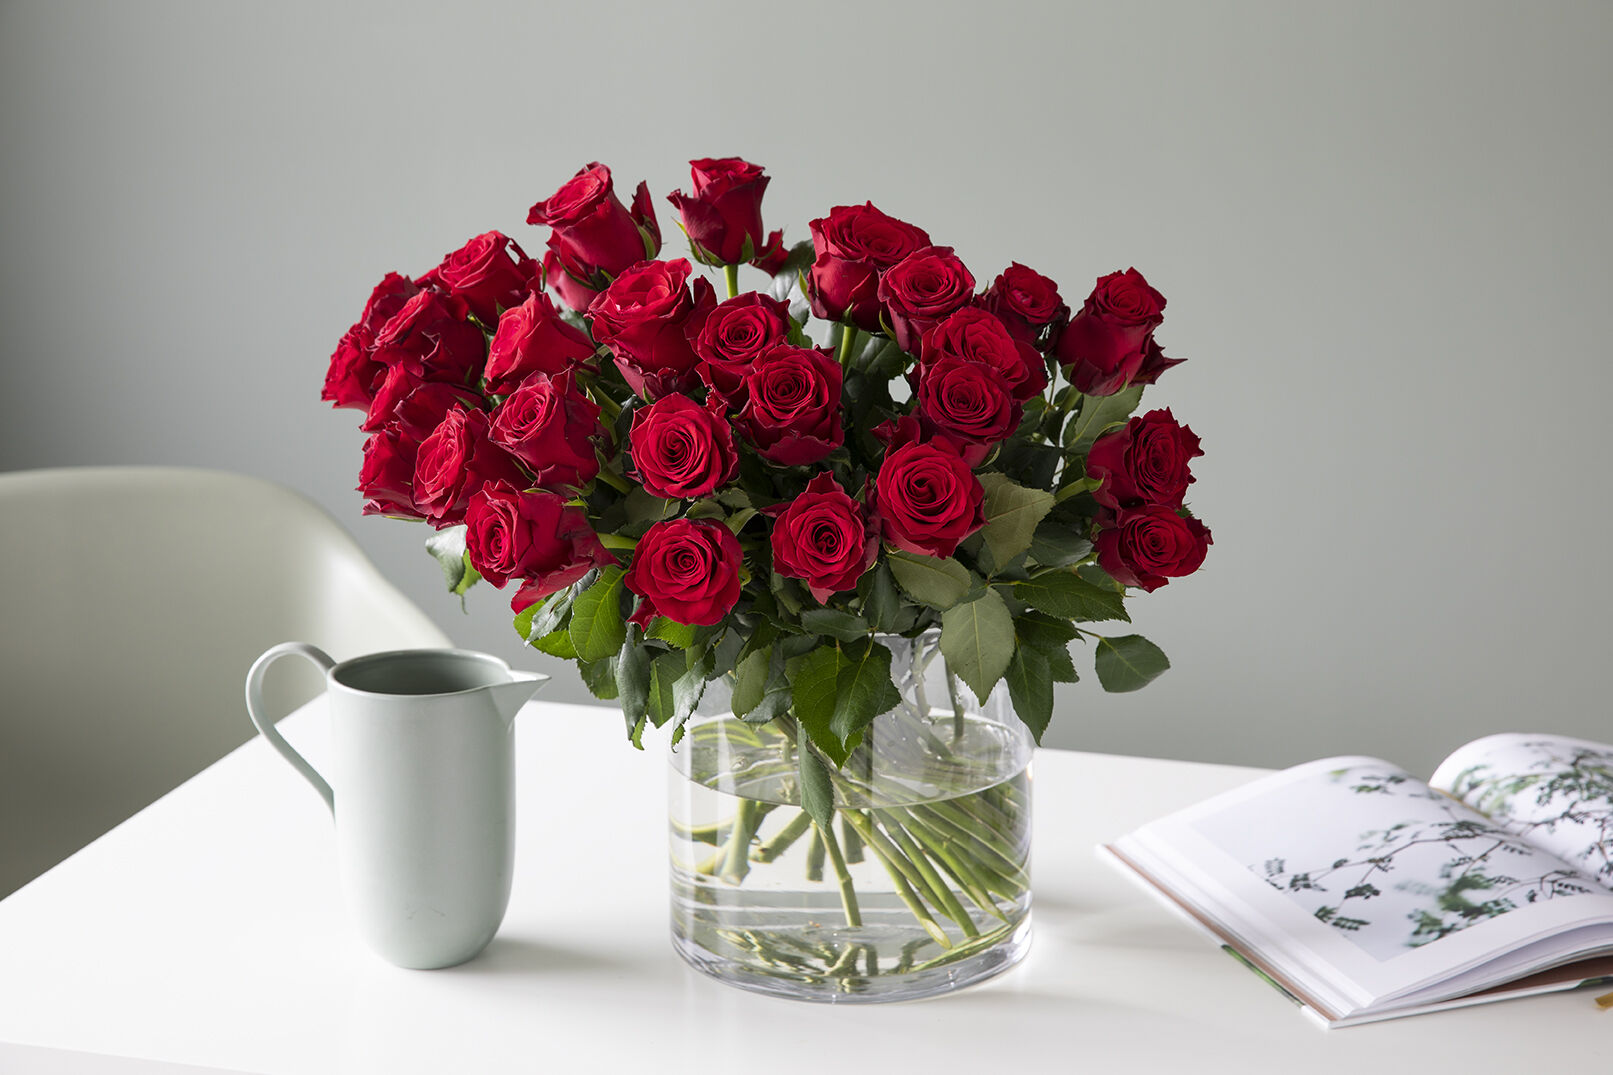 Røde roser i vase